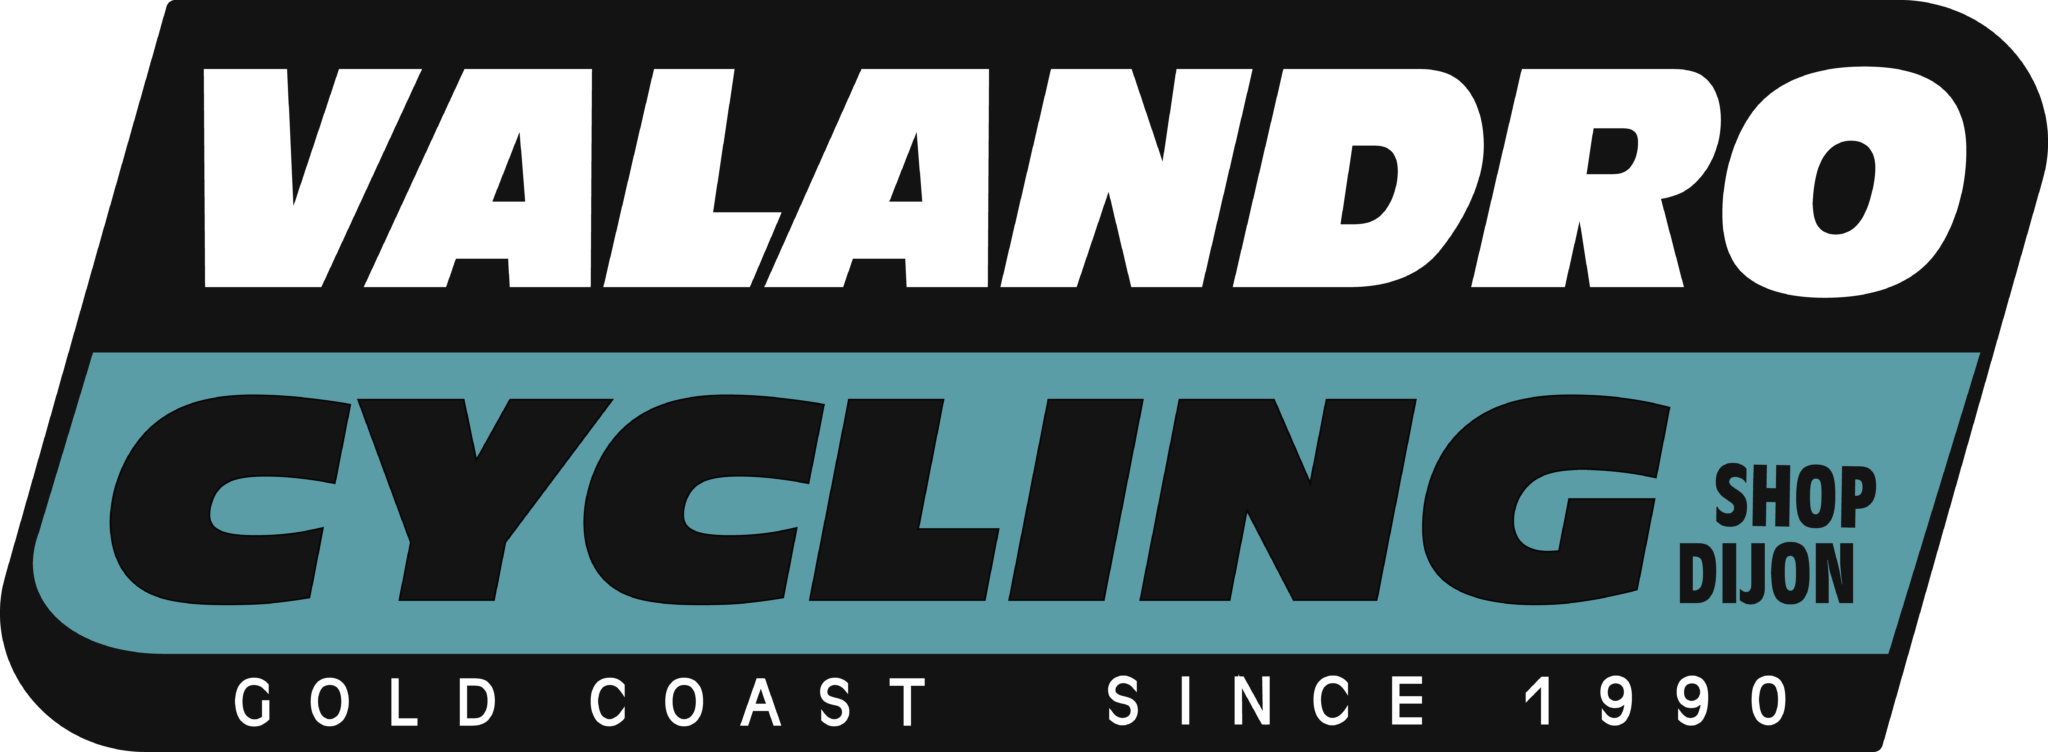 logo du magasin cycles Valandro à dijon de couleur bleu et noir